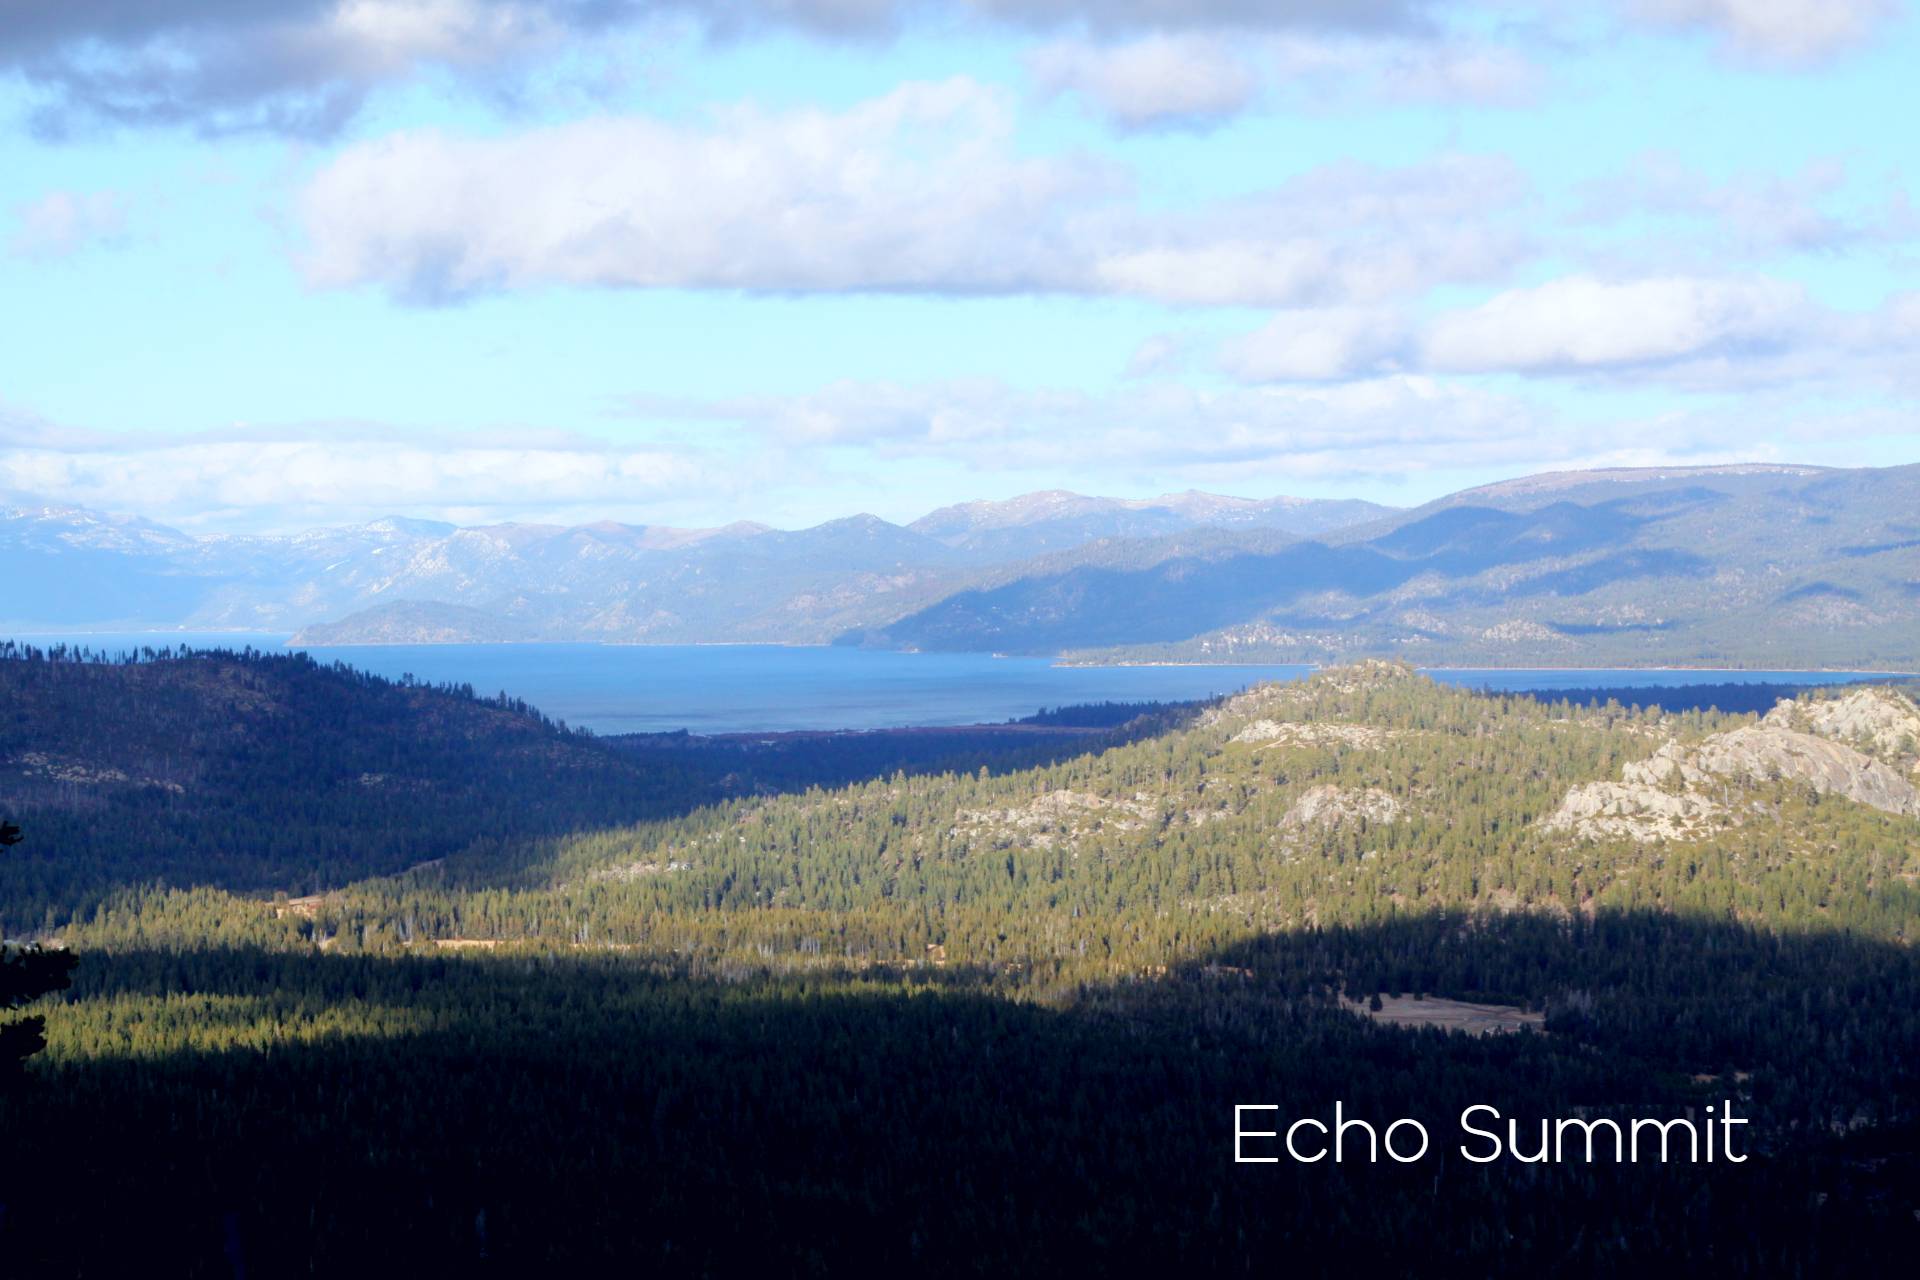 Echo summit